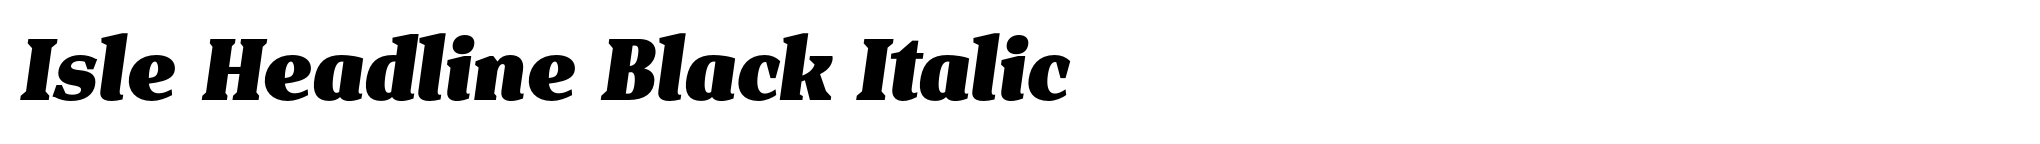 Isle Headline Black Italic image